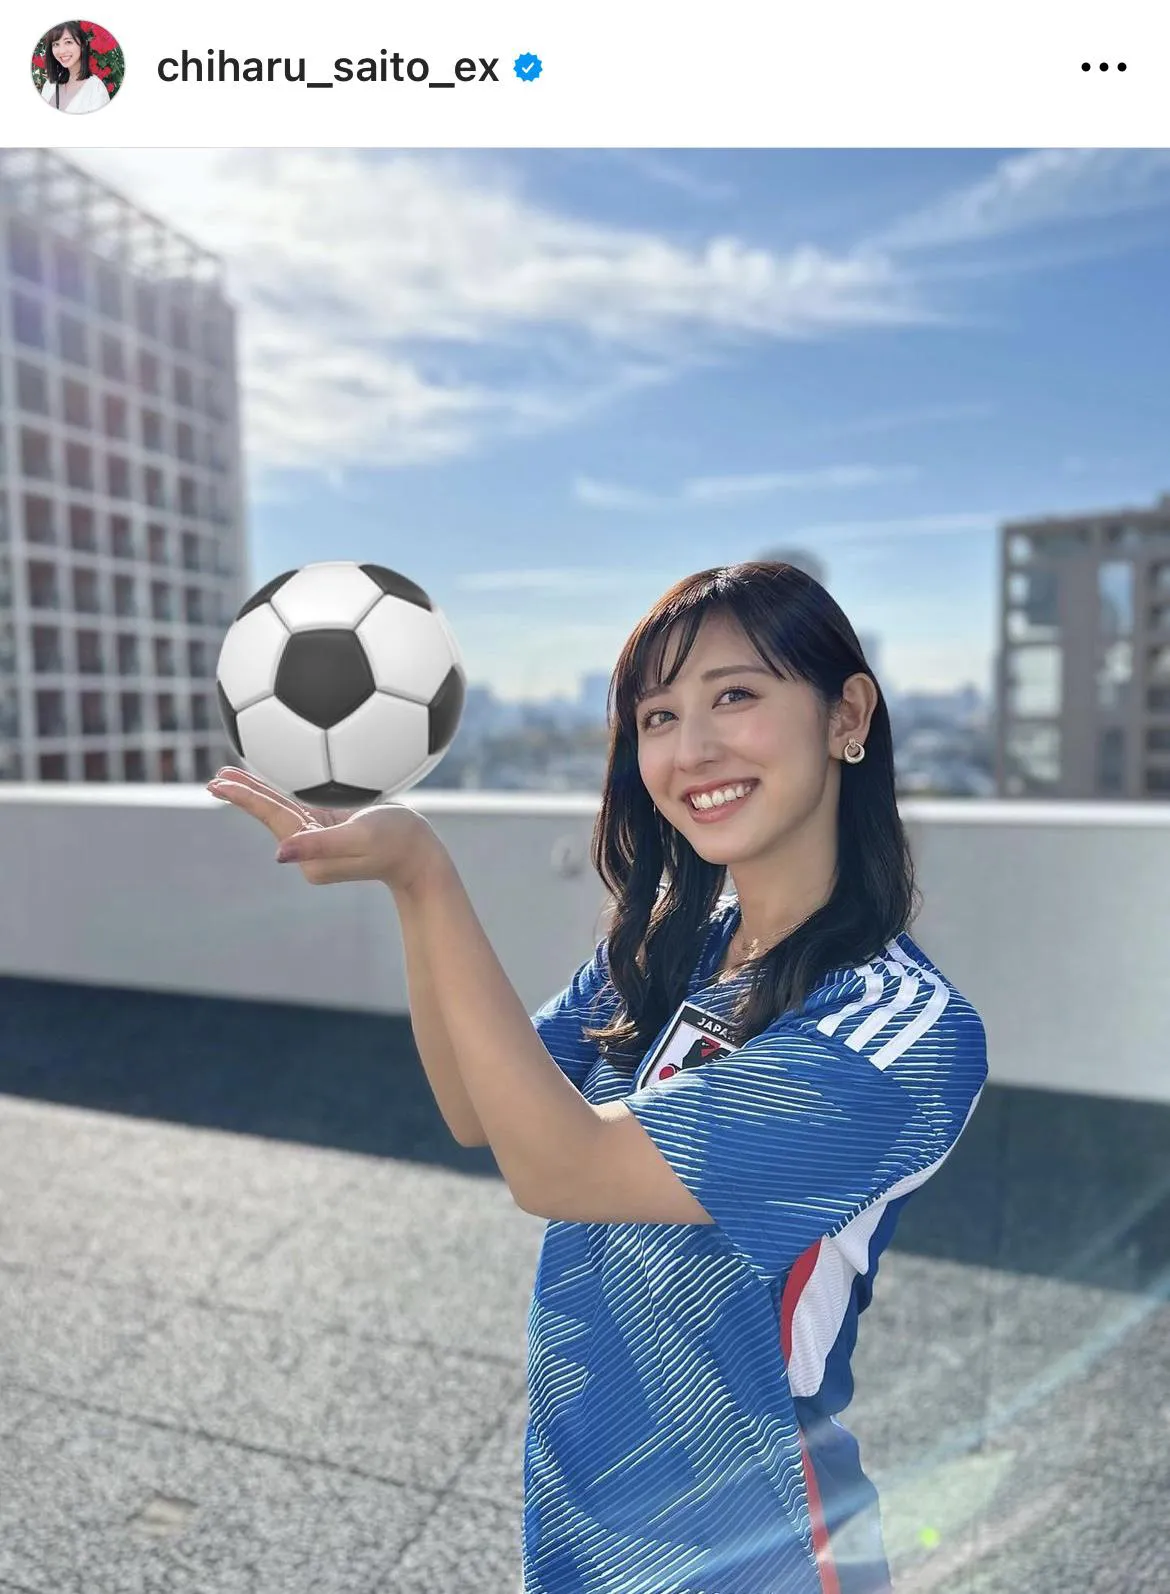 サッカーボールを持って笑顔を見せるユニフォーム姿の斎藤ちはるアナ